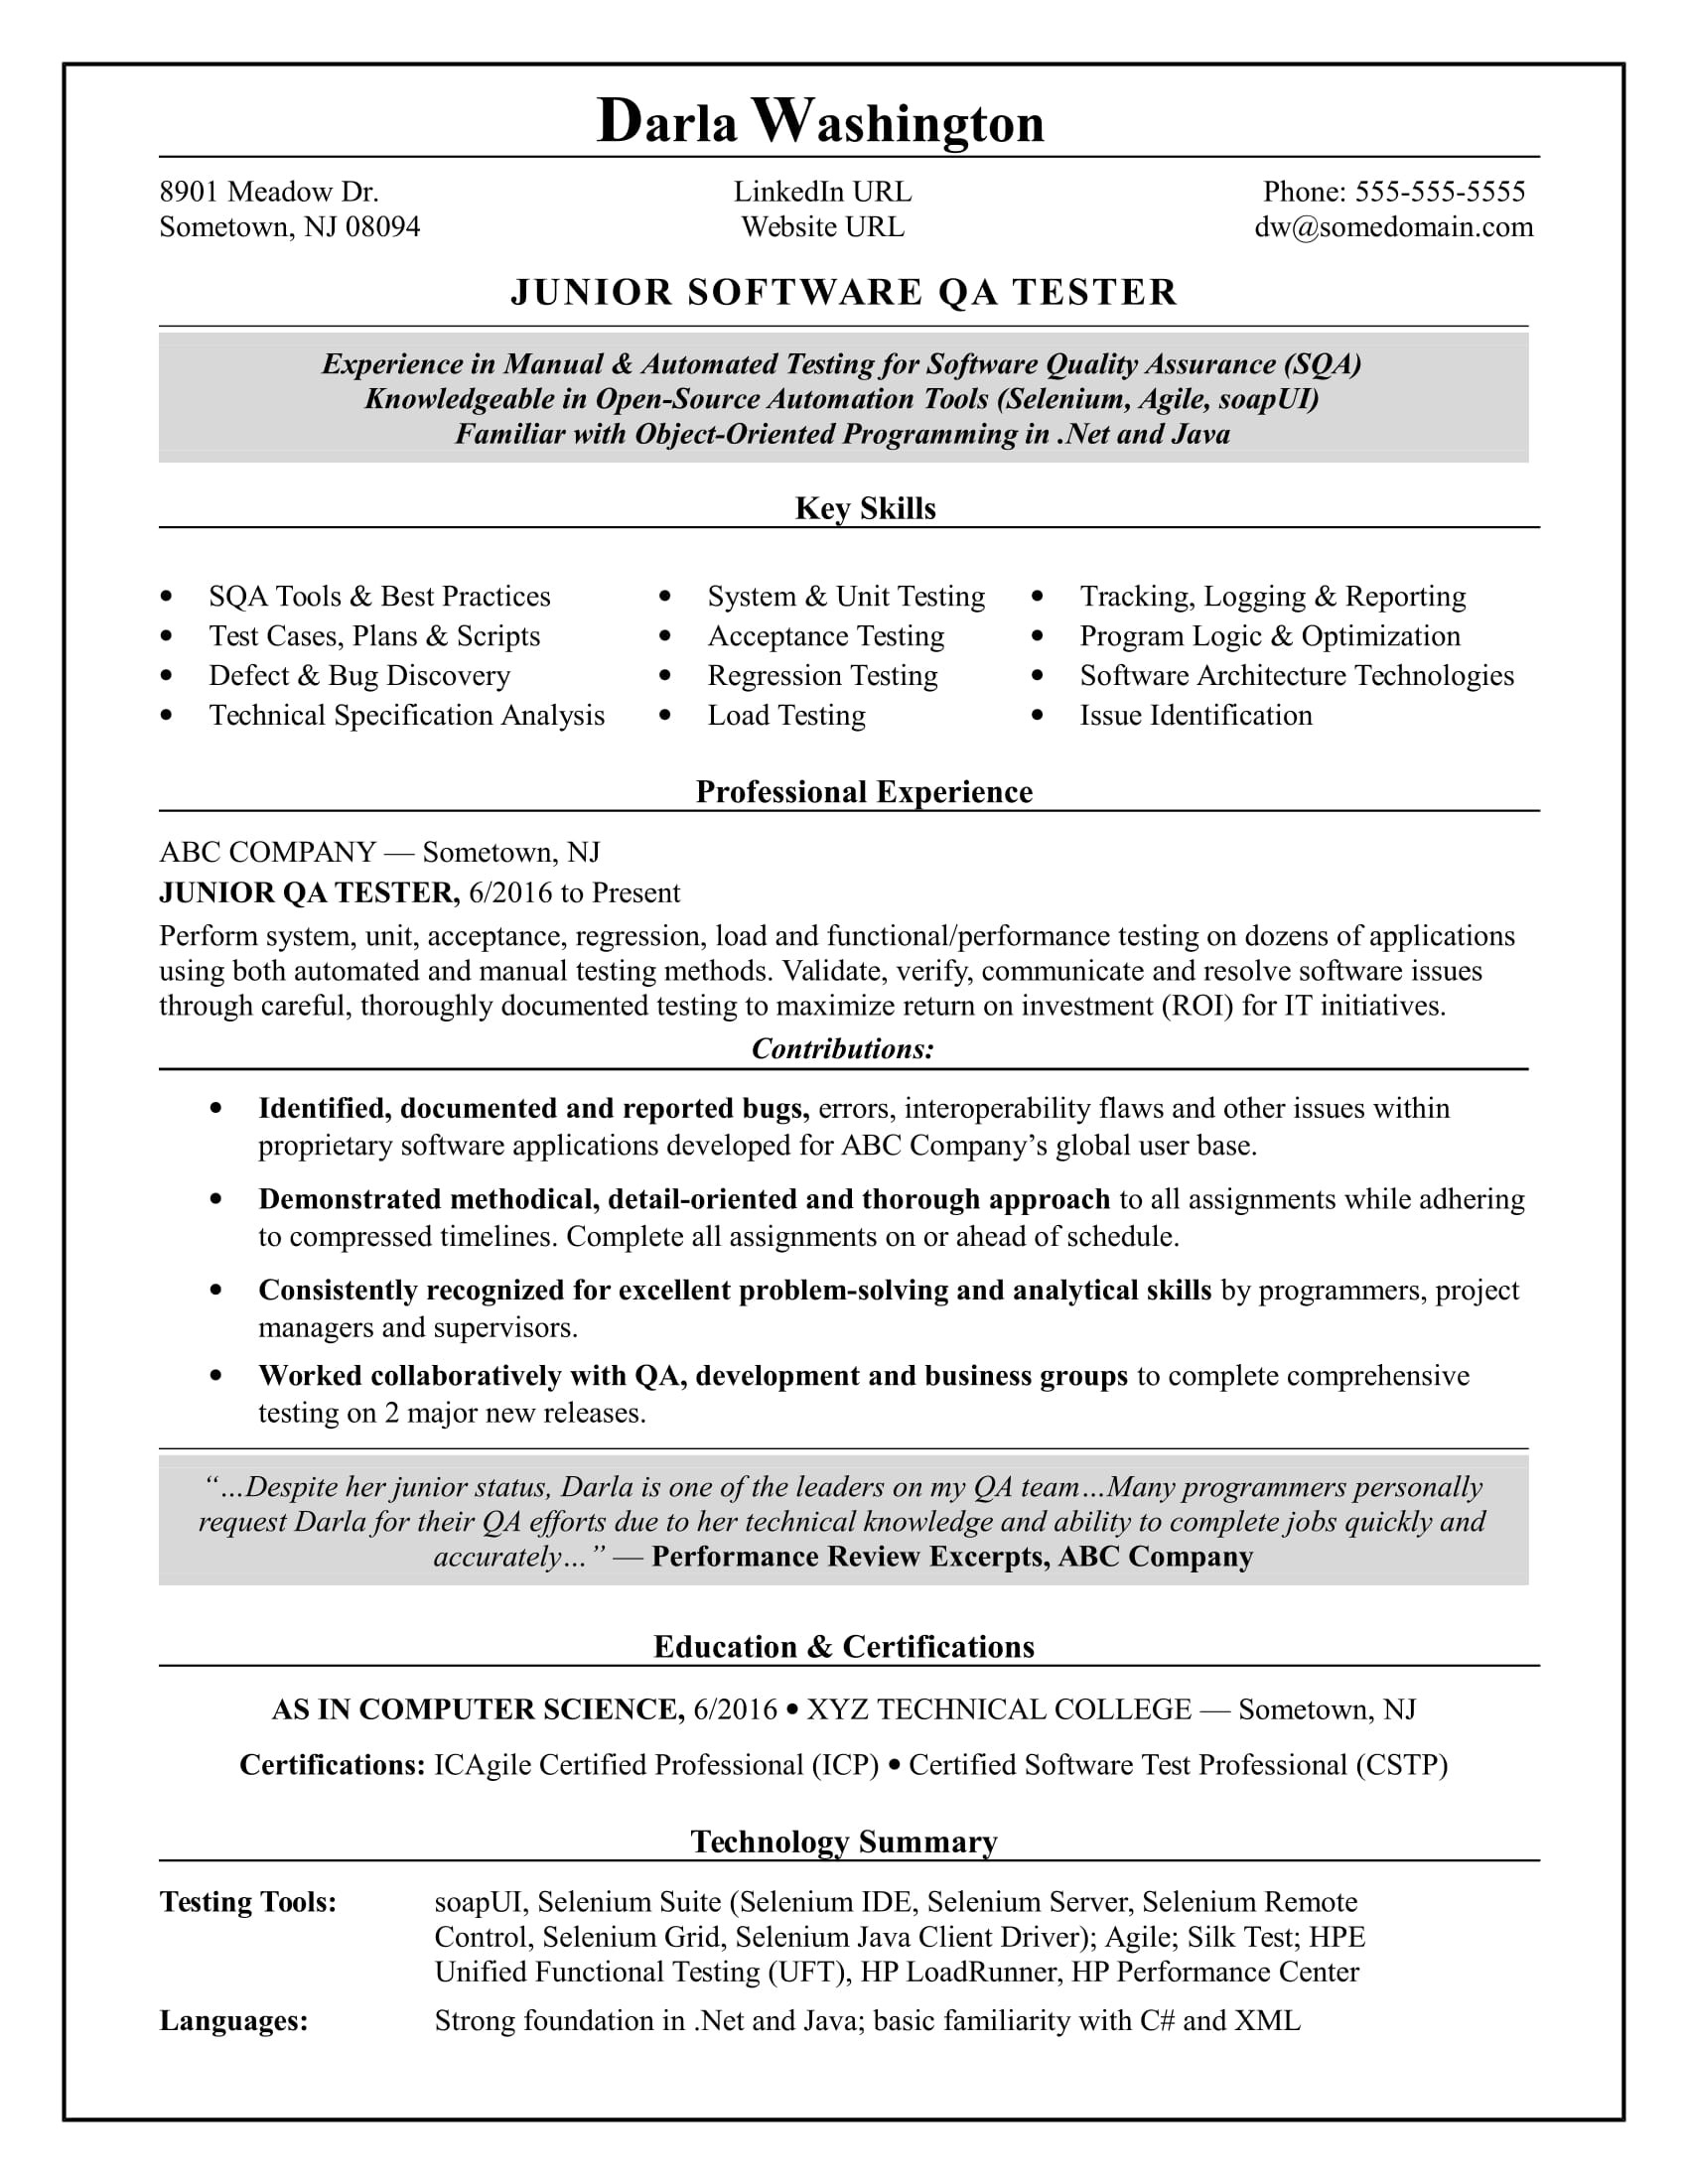 Sample Resume for Video Game Qa Tester Entry-level software Tester Resume Monster.com